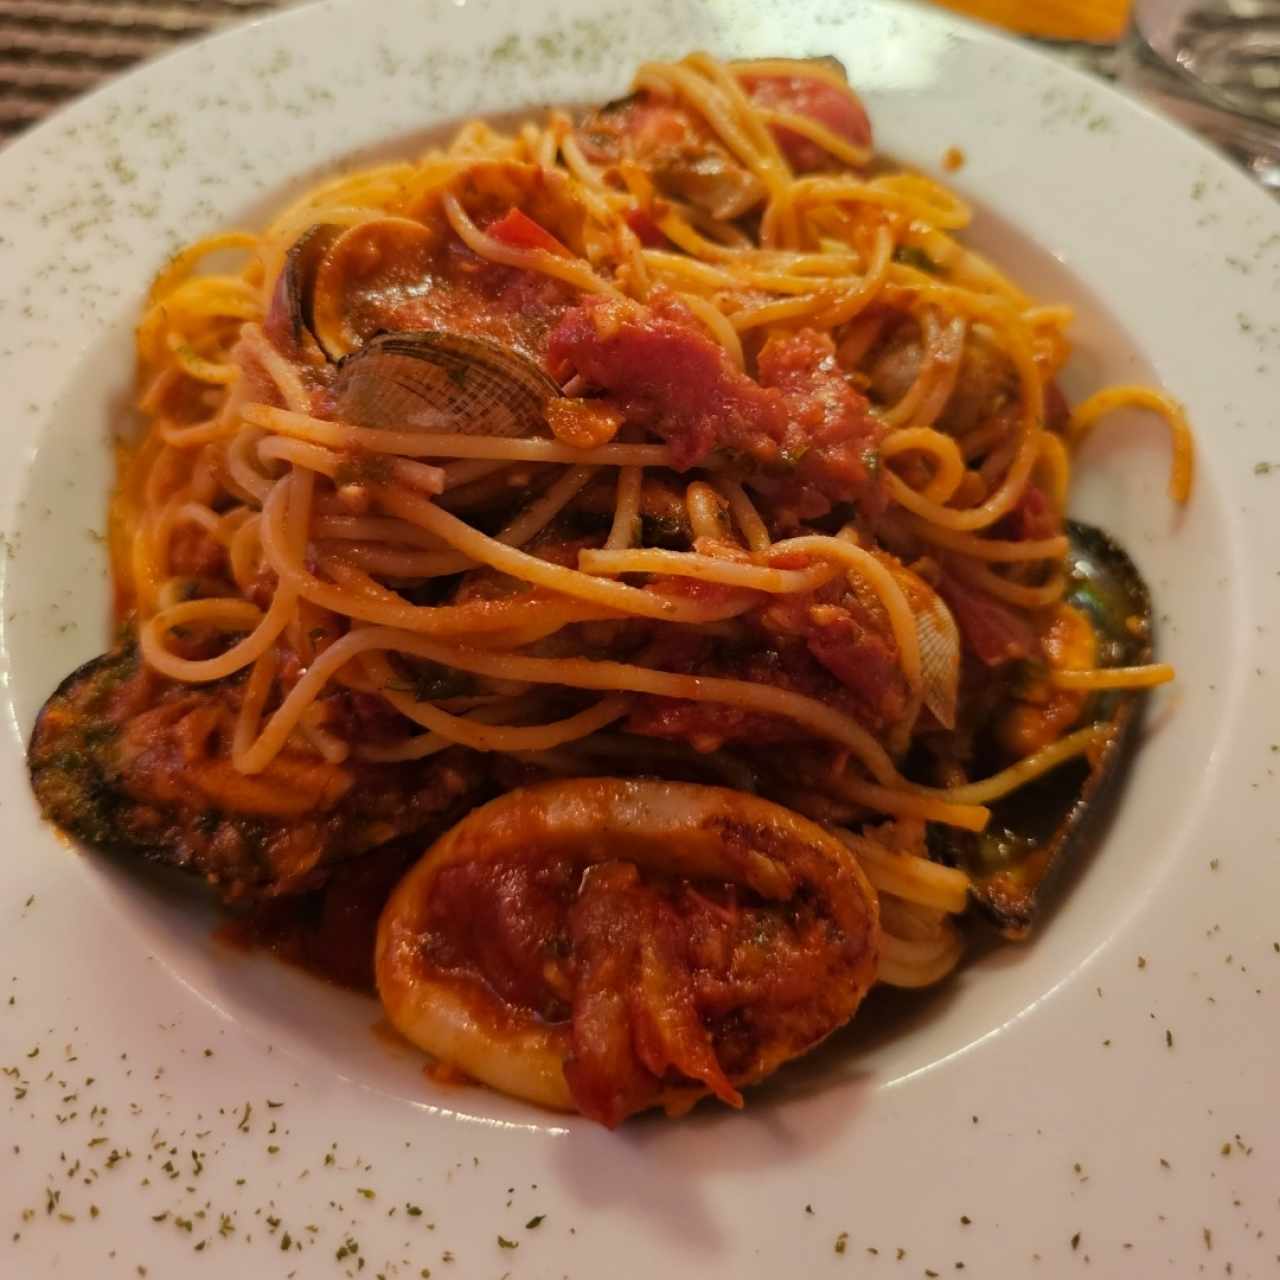 Spaghetti fruti di mare, delicioso!! 